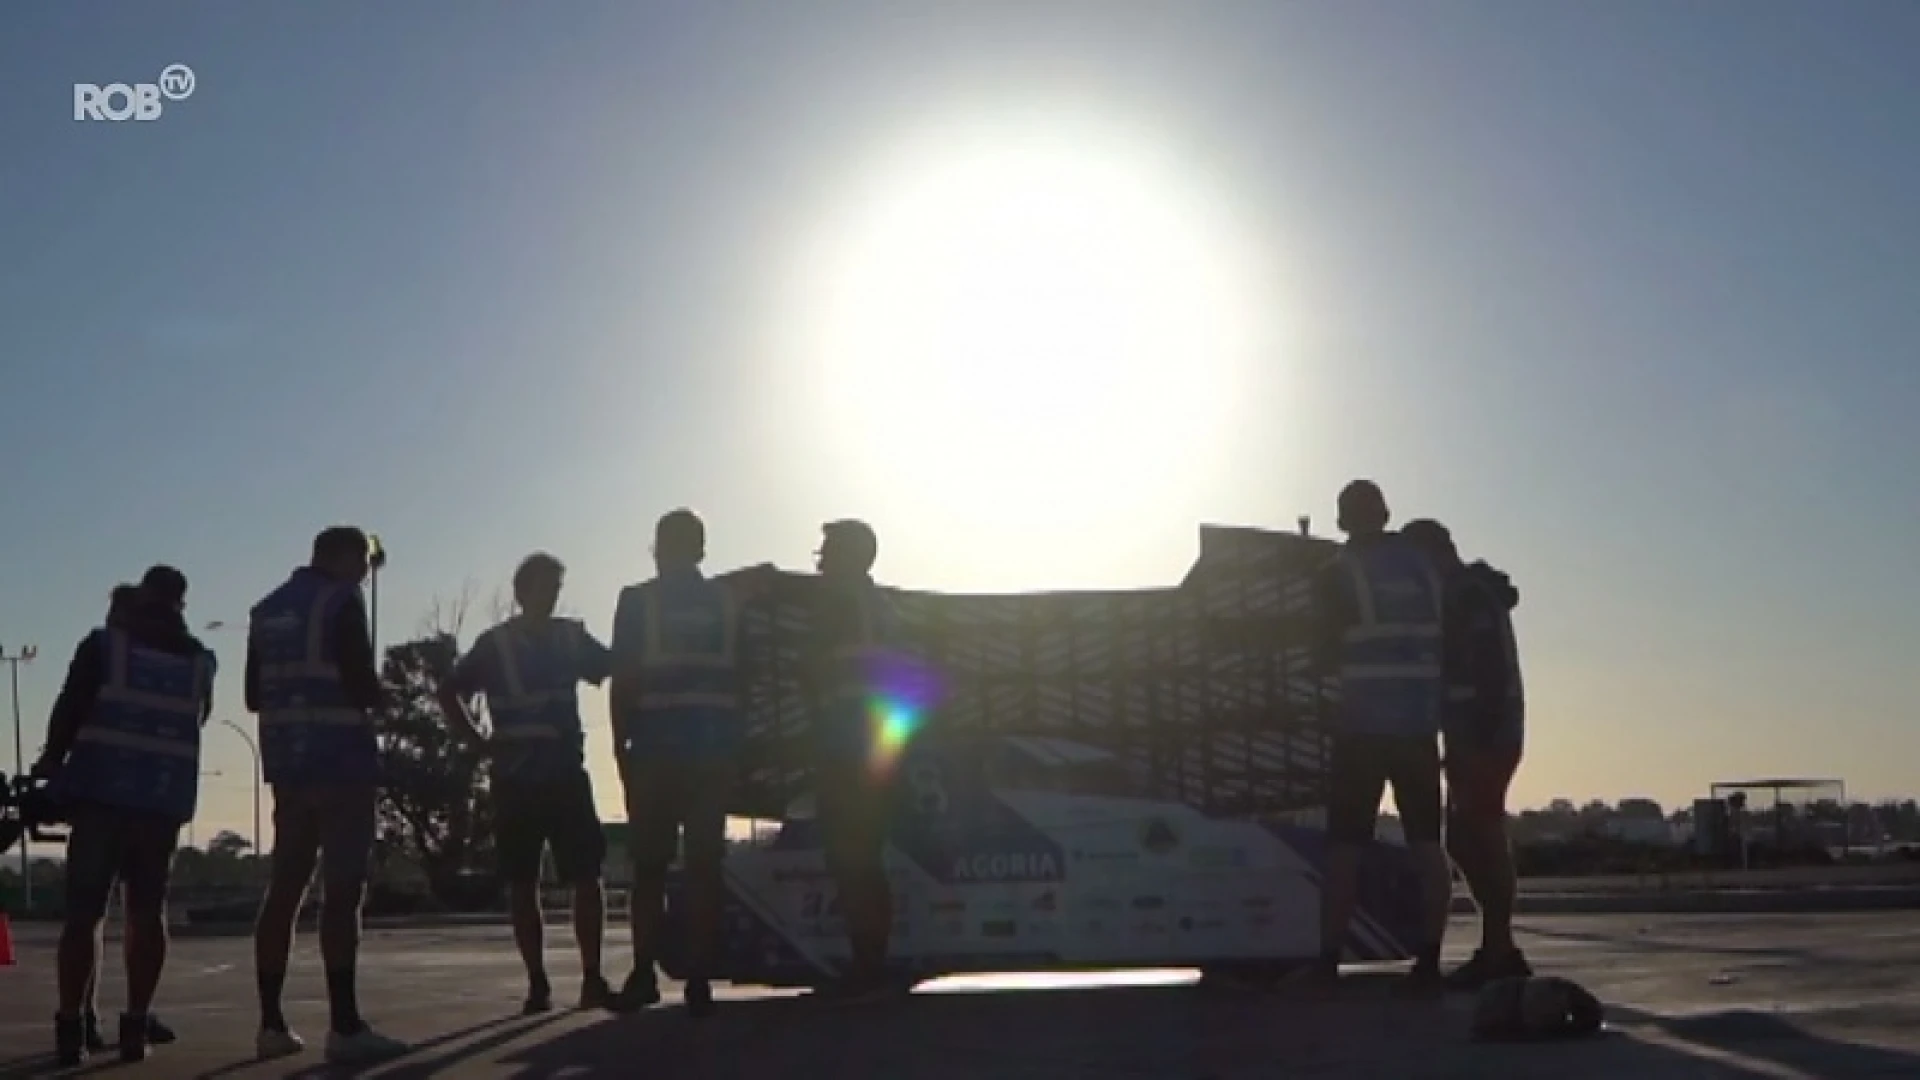 Leuvens Solar Team rukt na crash concurrenten op naar plaats twee